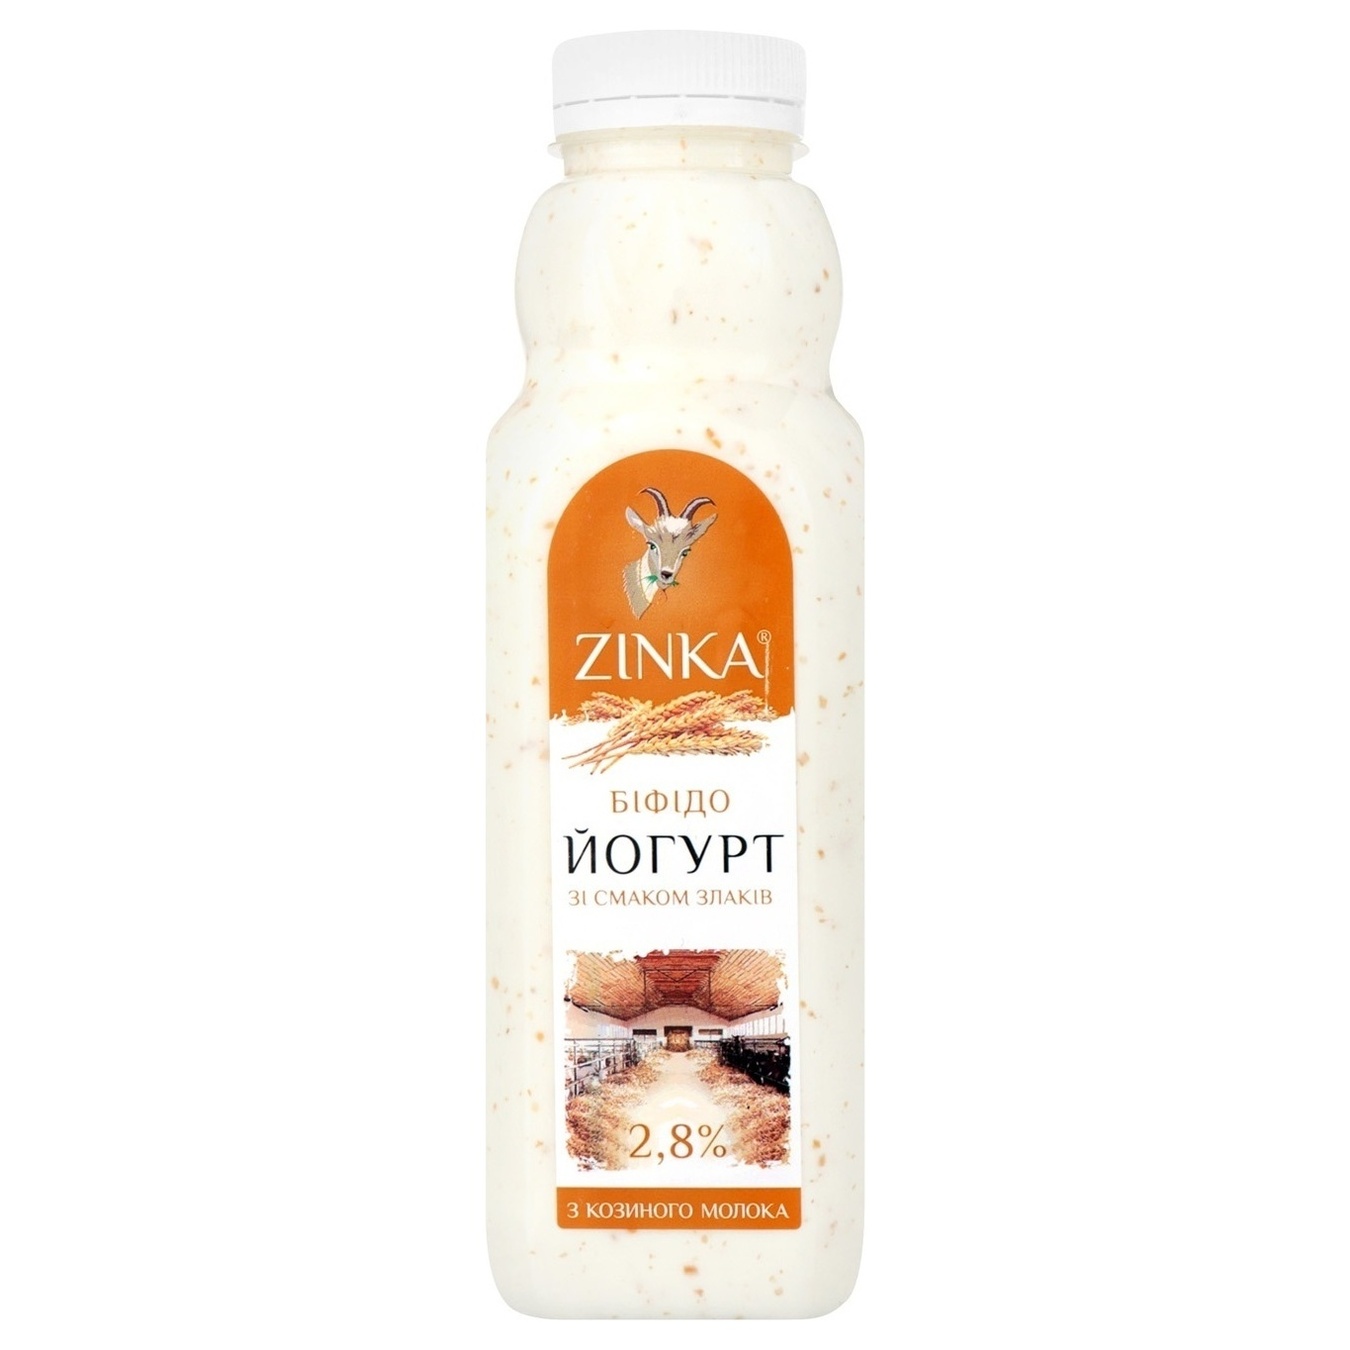 Бифидойогурт Zinka из козьего молока со вкусом злаков 2,8% 300г